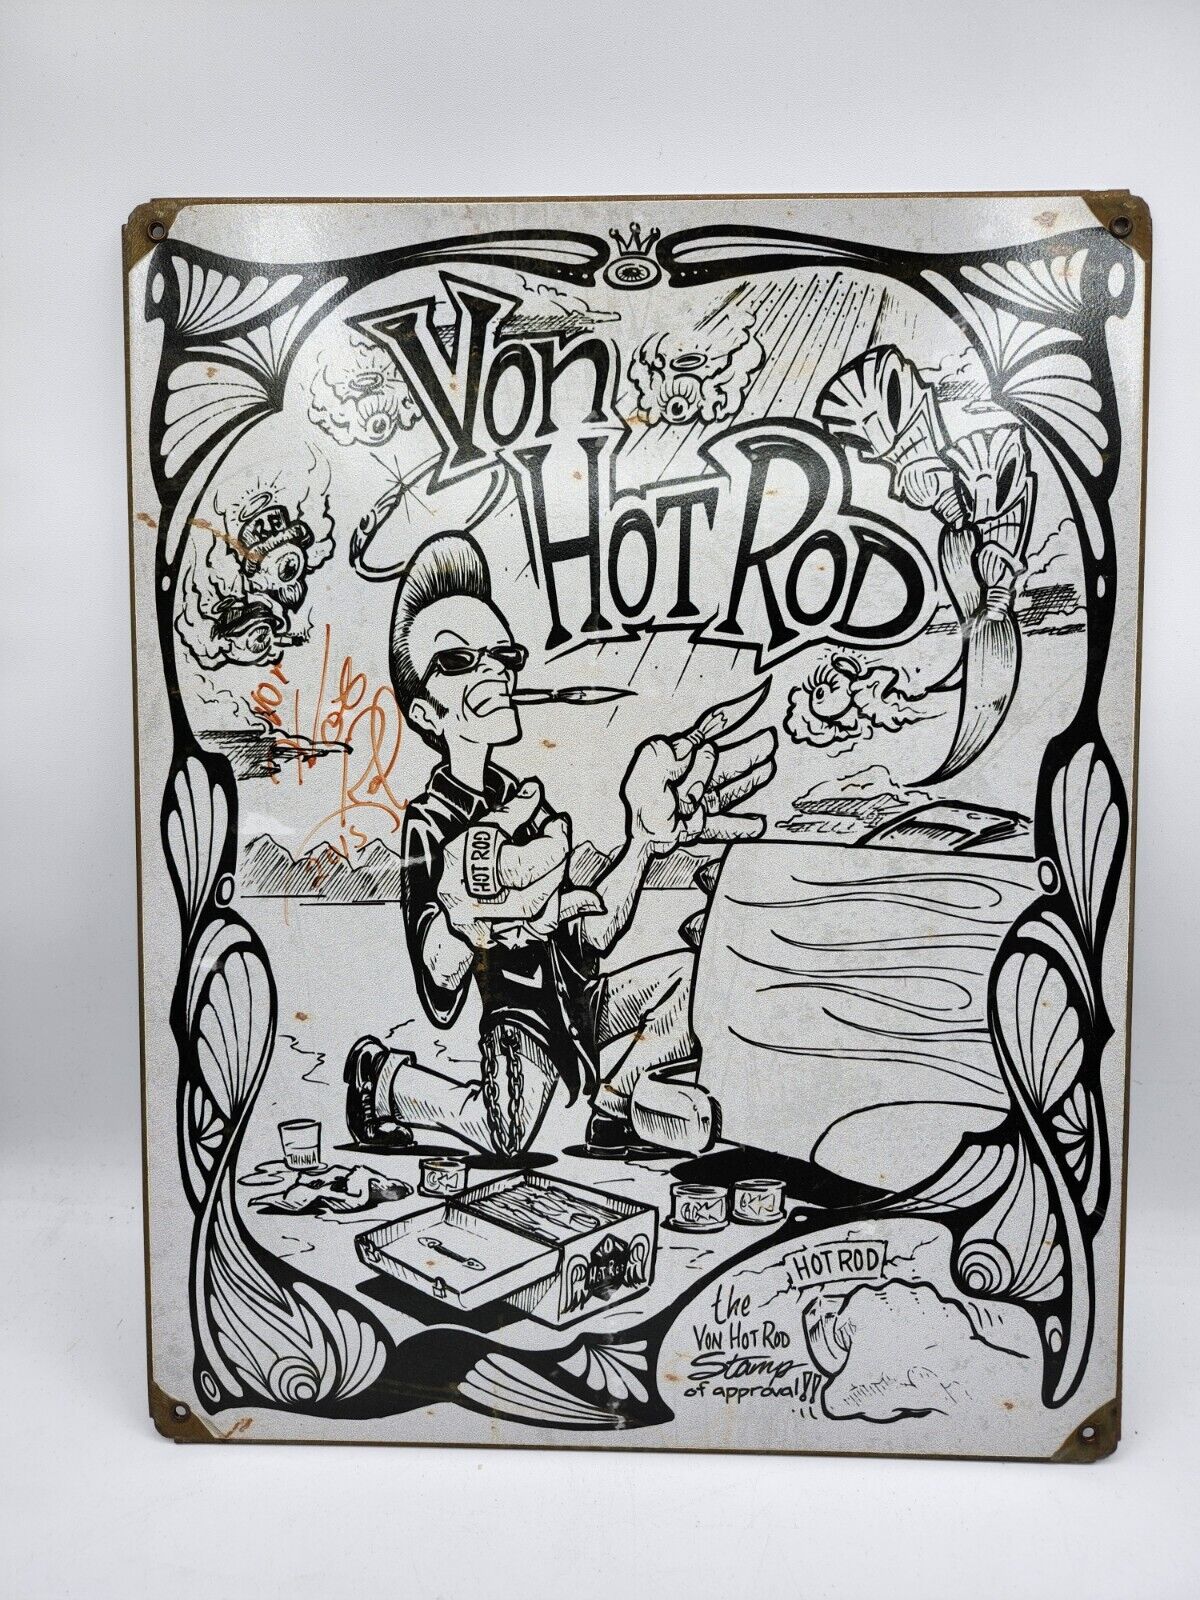 Von Hot Rod Metal Sign Autographed By Von Hot Rod